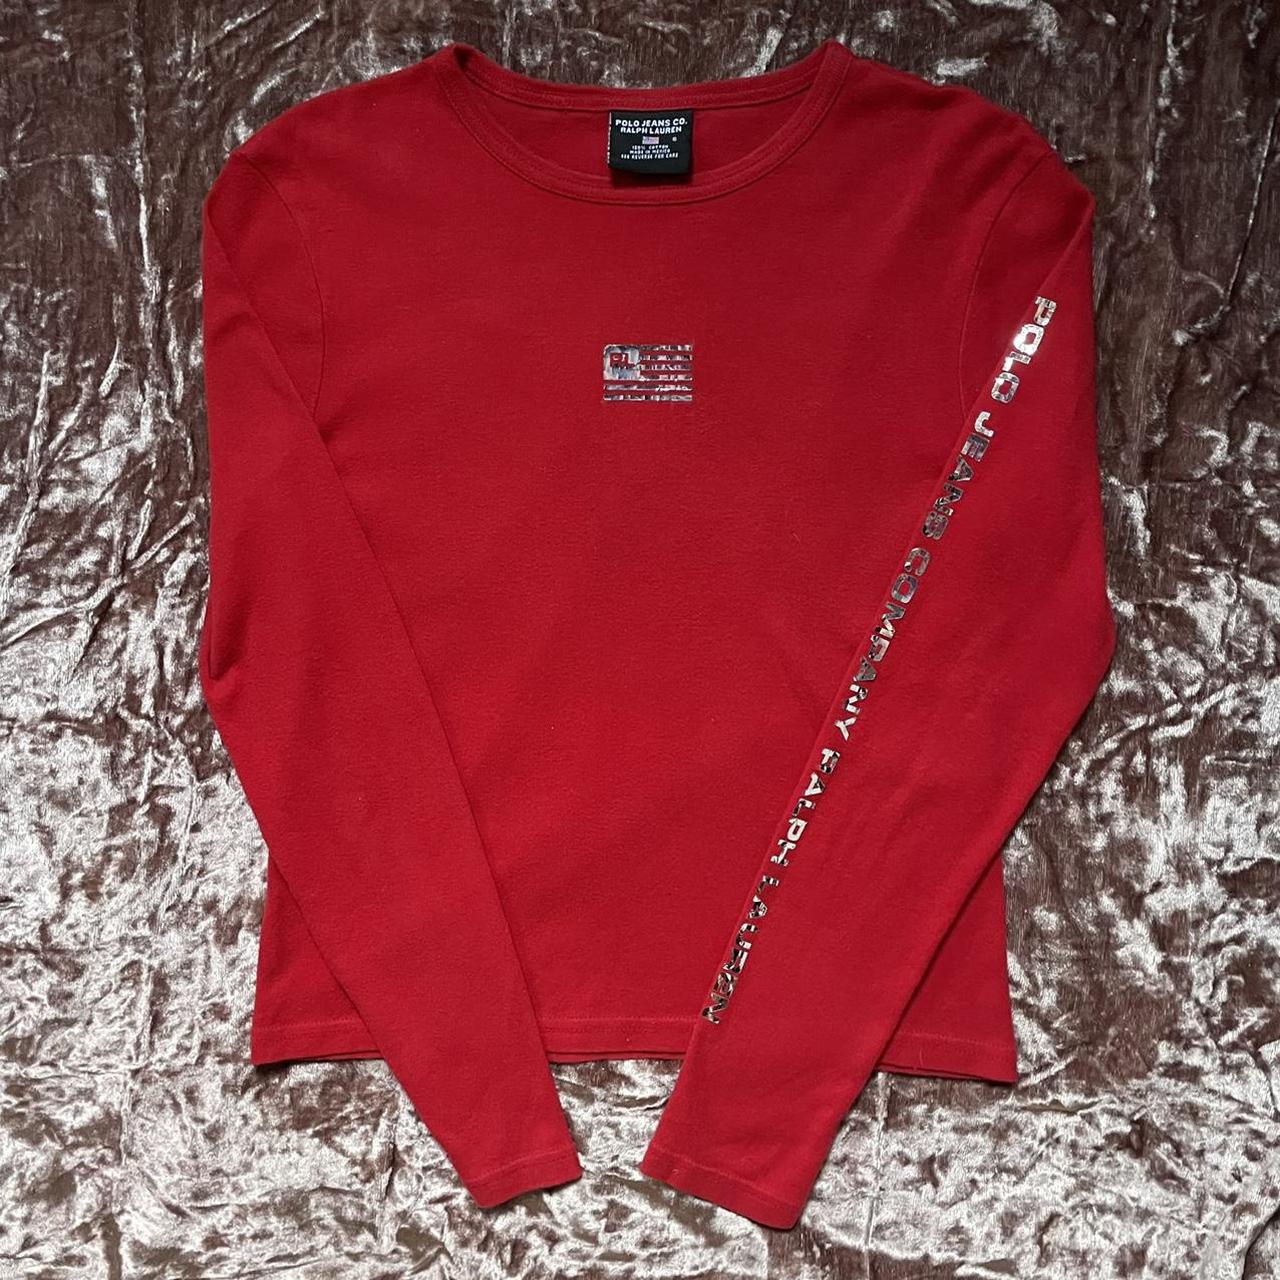 Polo Ralph Lauren red longsleeve shirt with chrome... - Depop